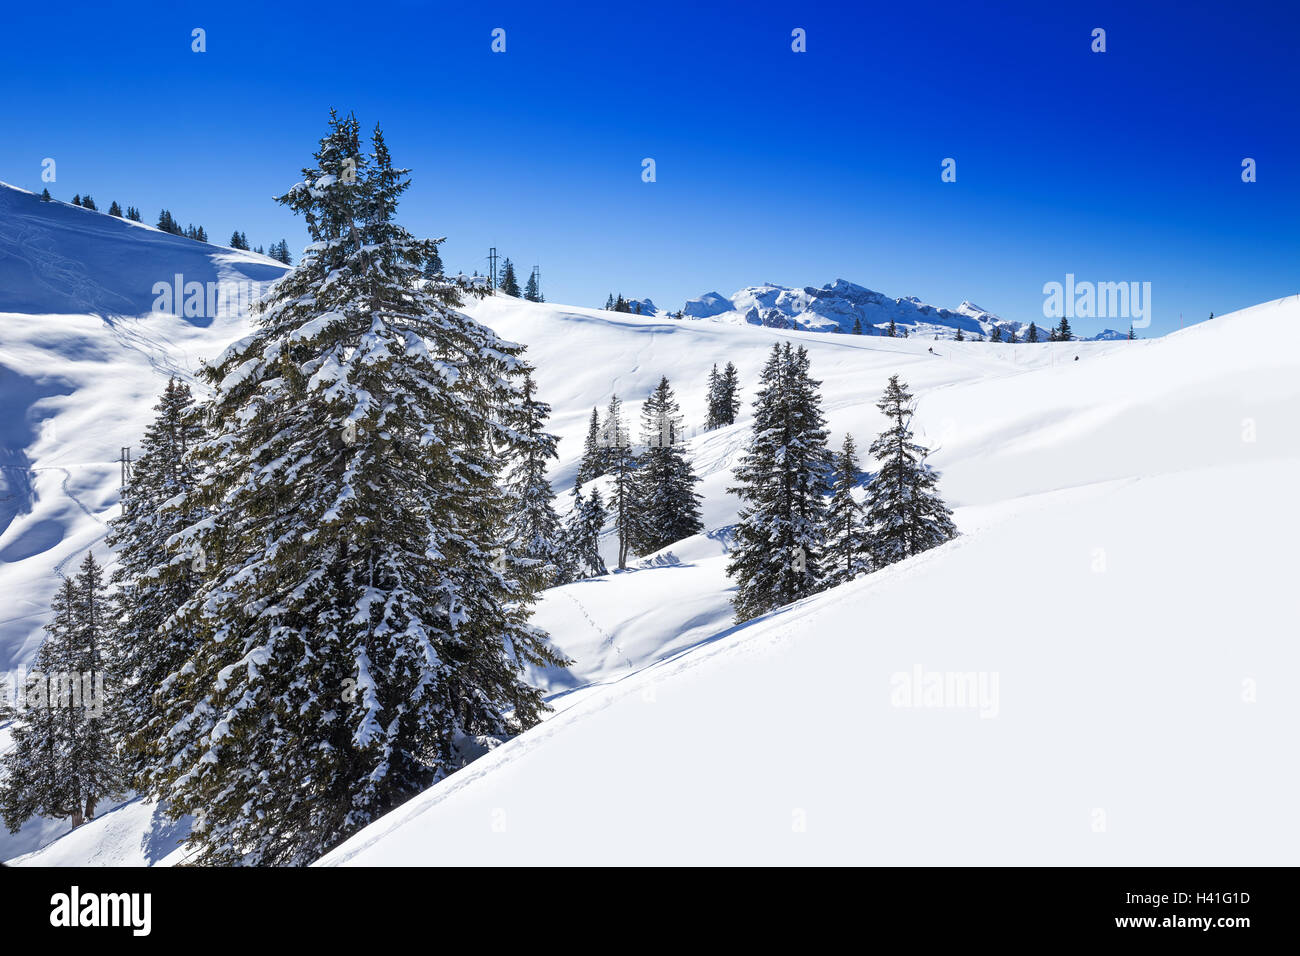 Alpes Suisses couverts par la neige fraîche vu de Hoch-Ybrig ski resort, Suisse Centrale Banque D'Images